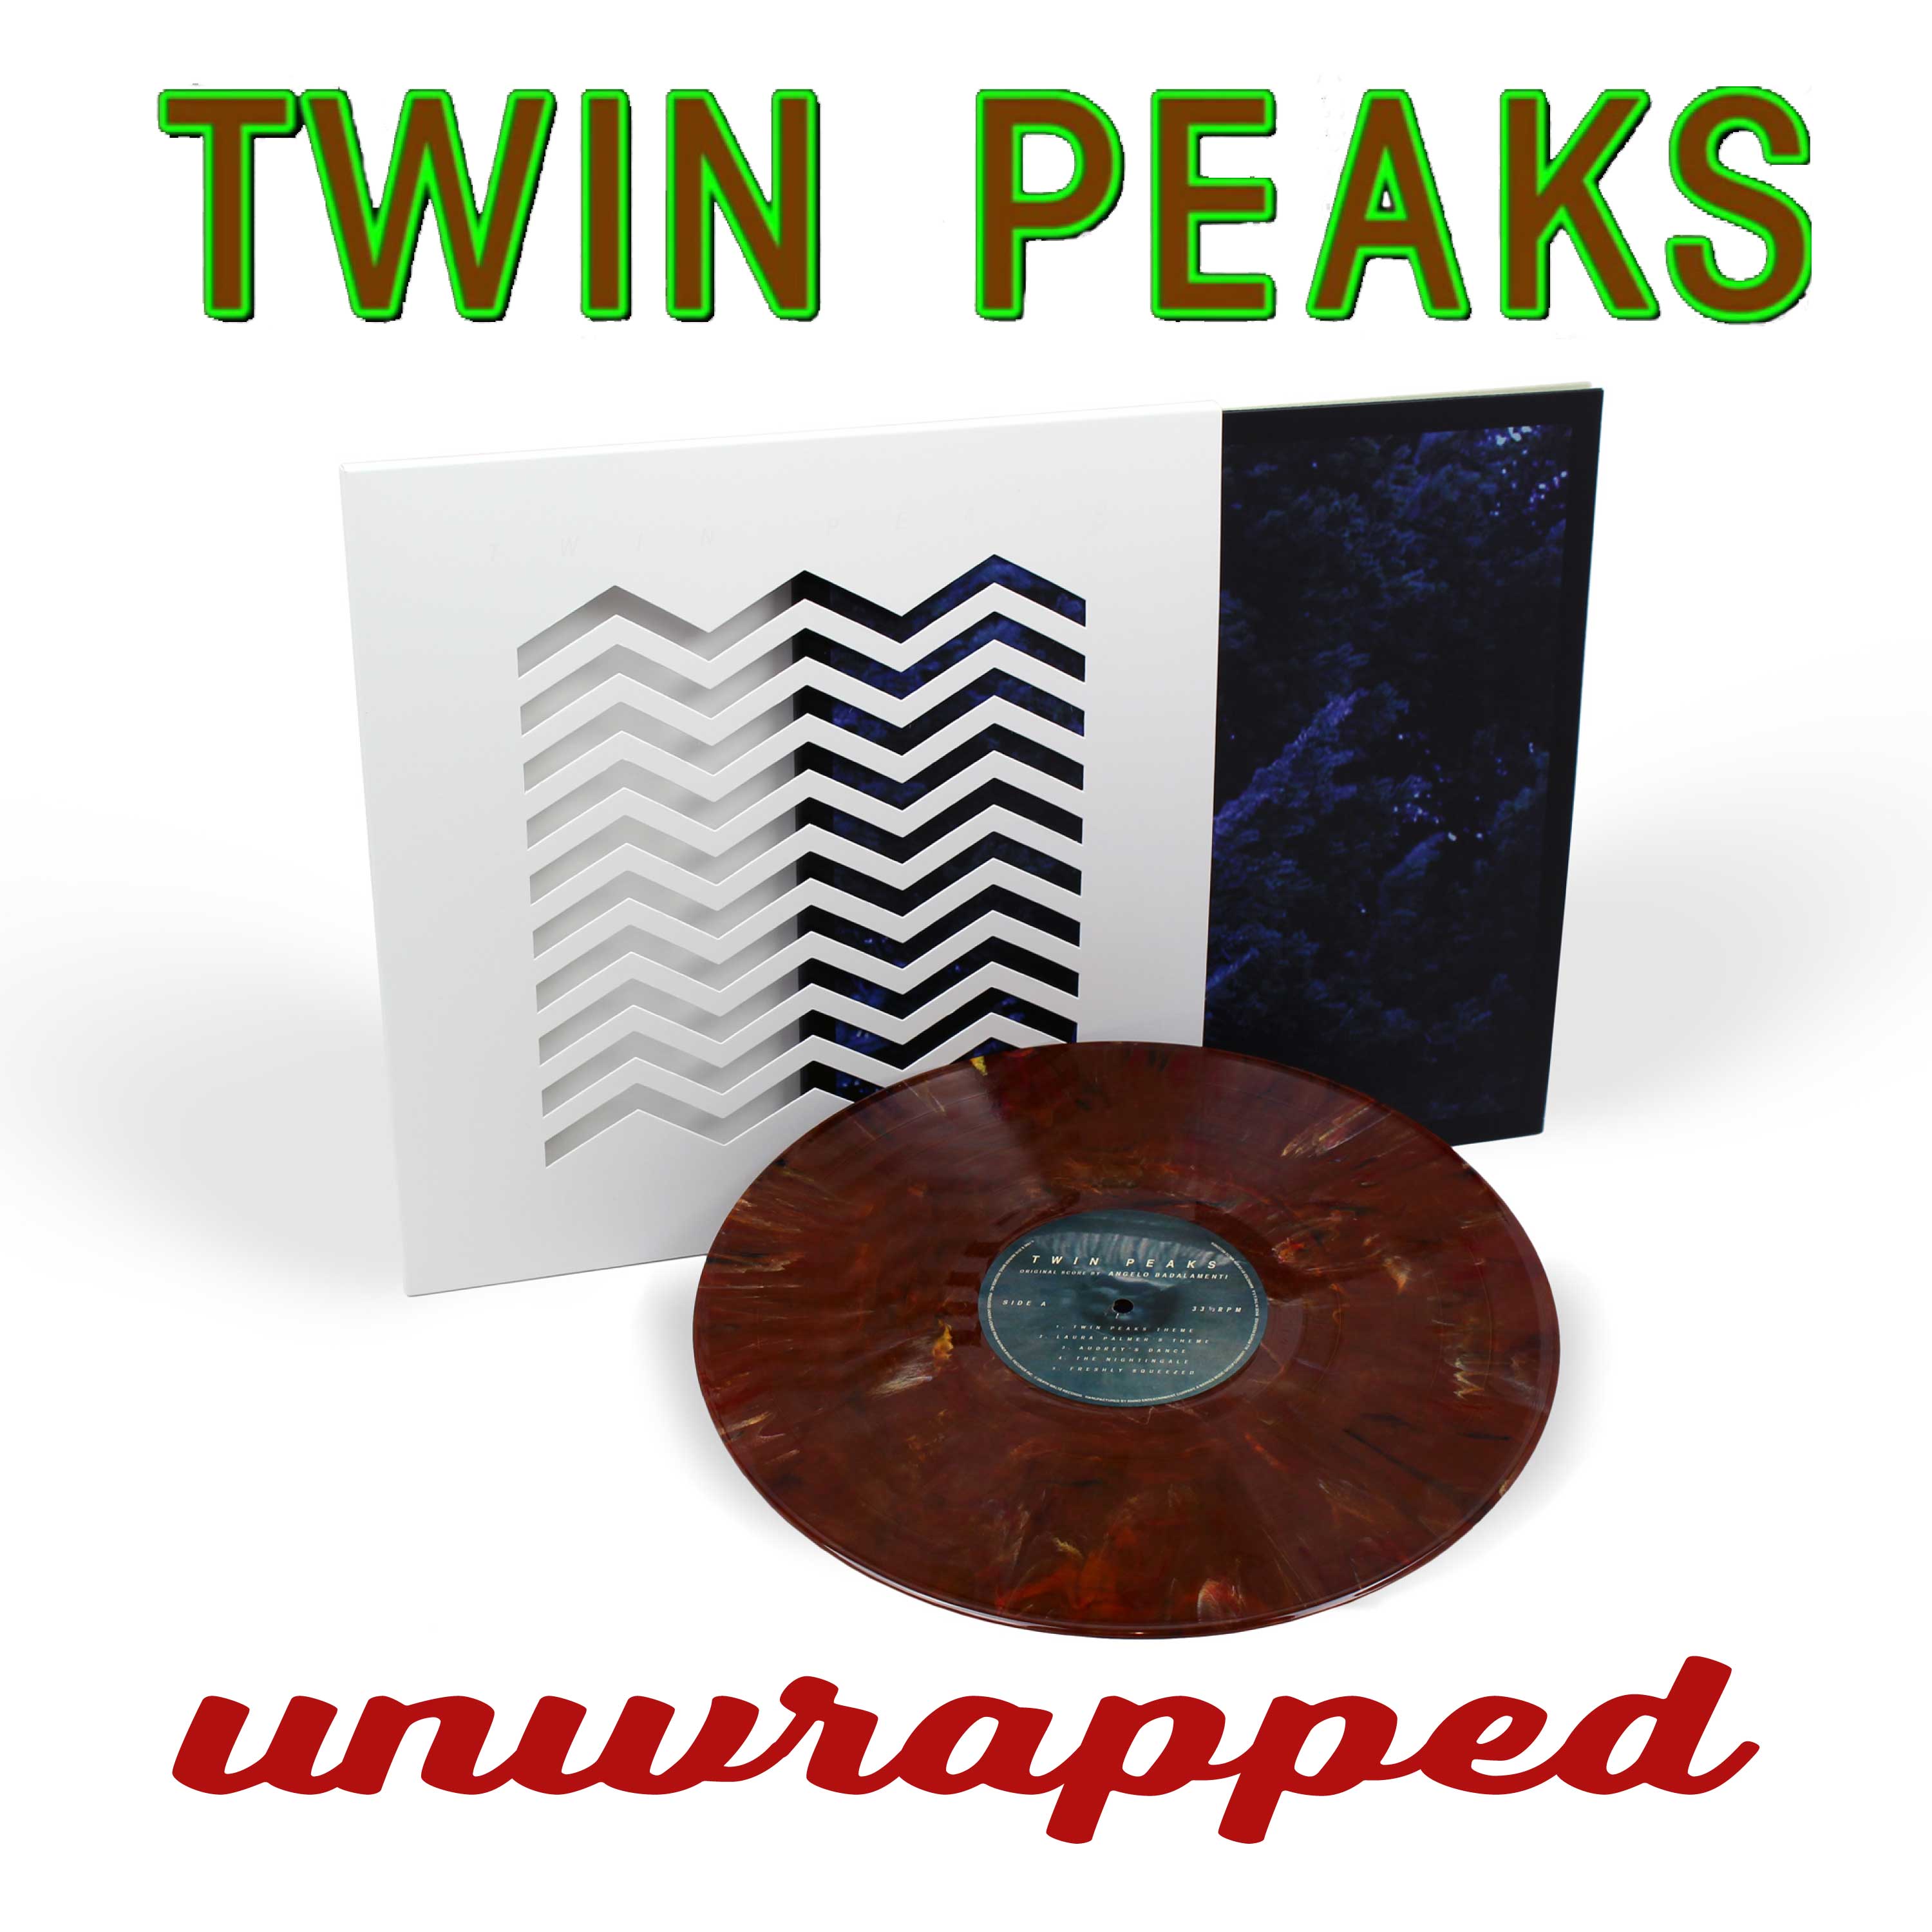 Twin Peaks Unwrapped 67: Twin Peaks Soundtrack on Vinyl & Incest in Twin Peaks 